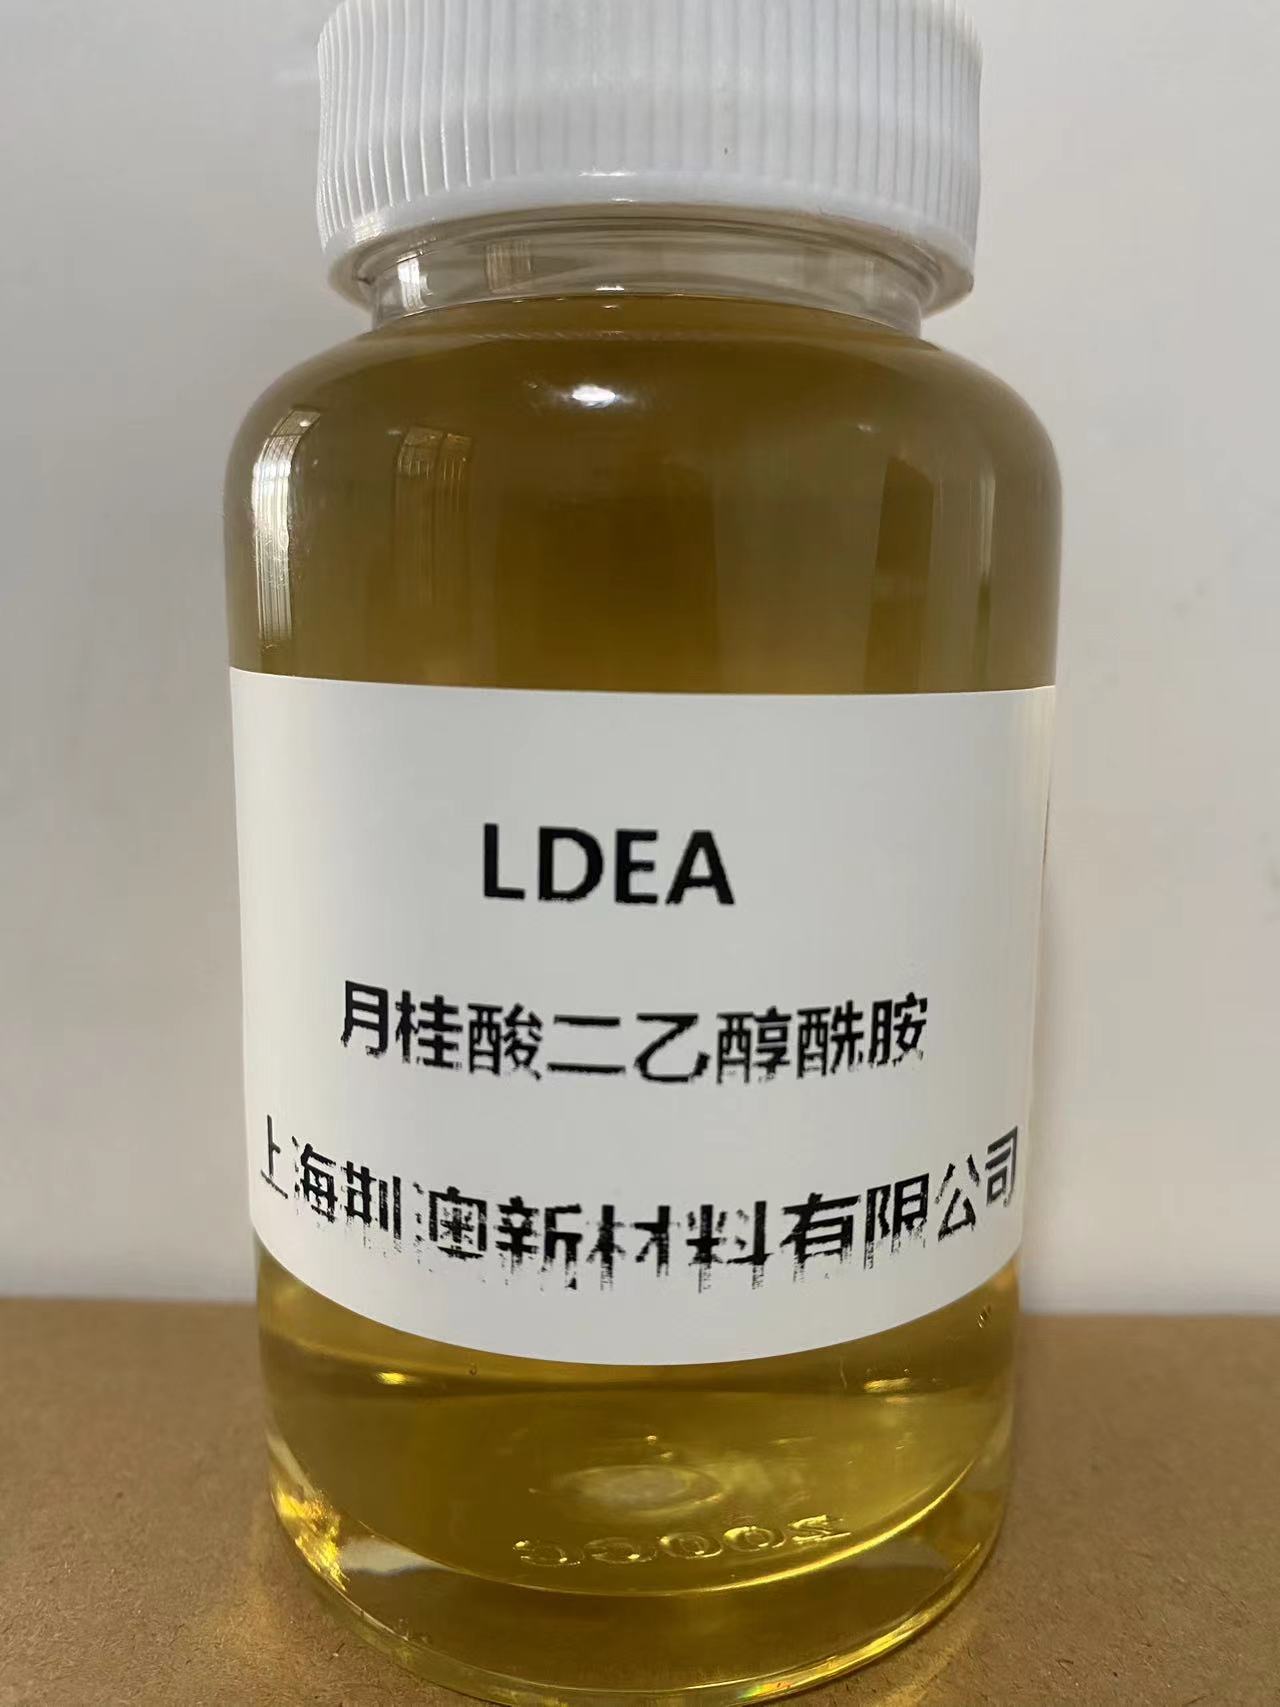 月桂酸二乙醇酰胺 LDEA